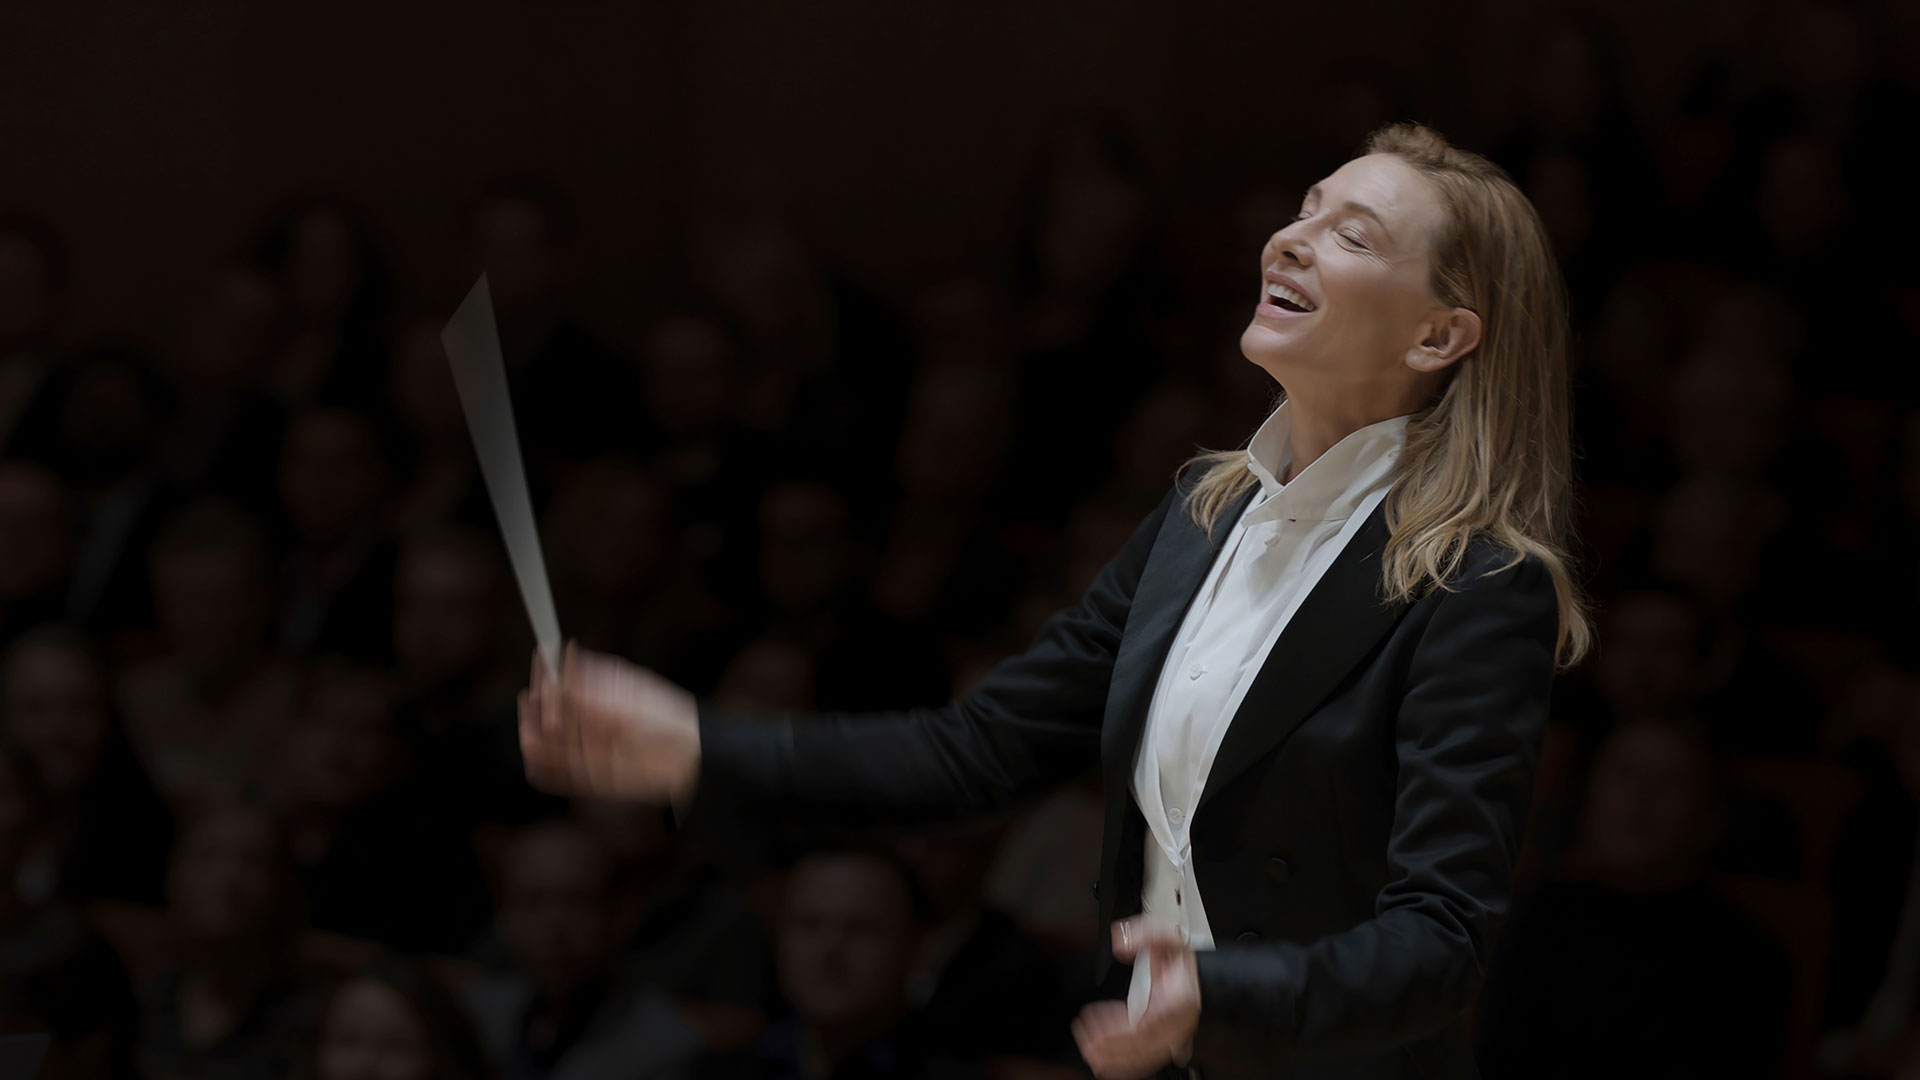 Para su personaje de "Tár", Cate Blanchett aprendió a tocar el piano, a hablar alemán y a dirigir una orquesta (Foto: Focus Features vía AP)